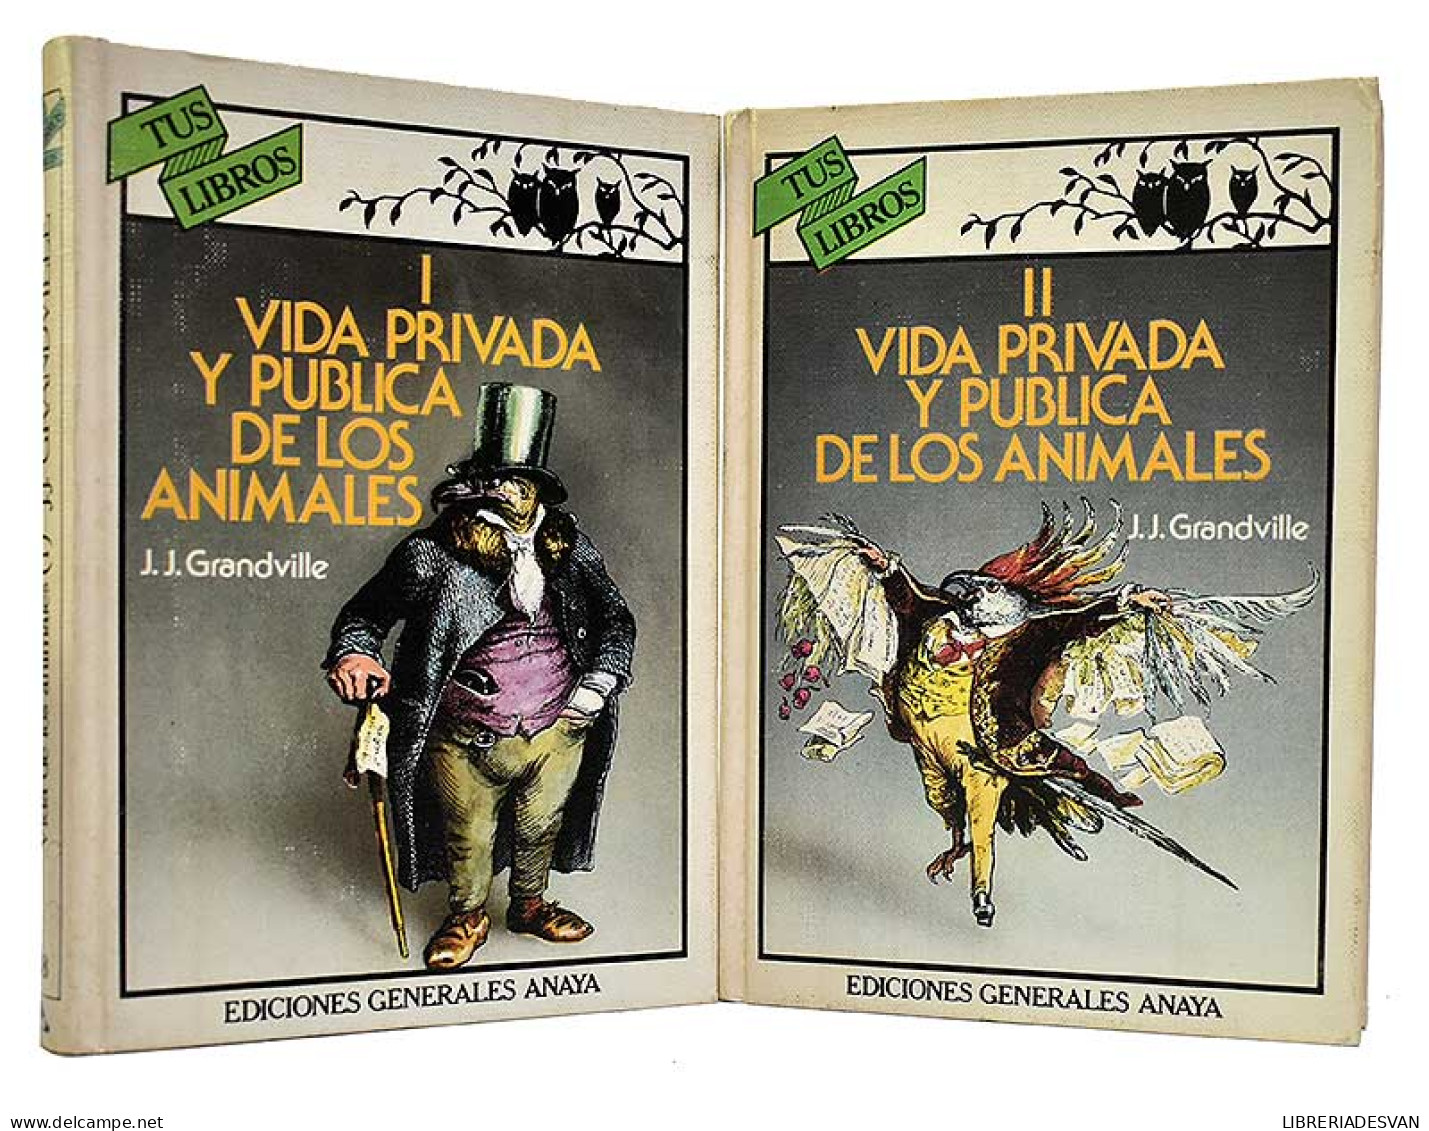 Vida Privada Y Pública De Los Animales. 2 Tomos. Tus Libros - J.J. Grandville - Children's